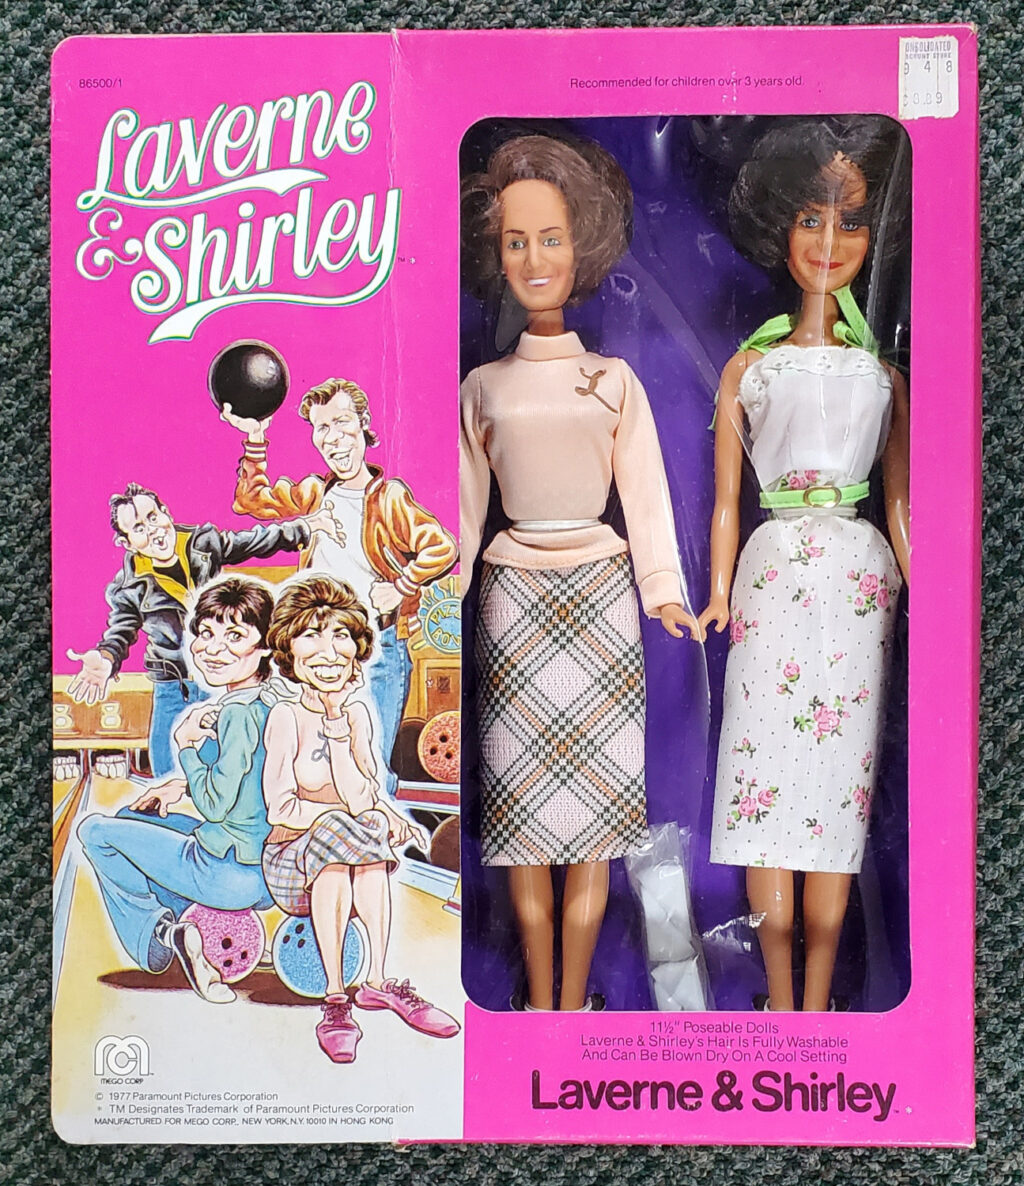 MIB 1977 Mego Laverne & Shirley 12" Dolls: Factory Sealed Box 1